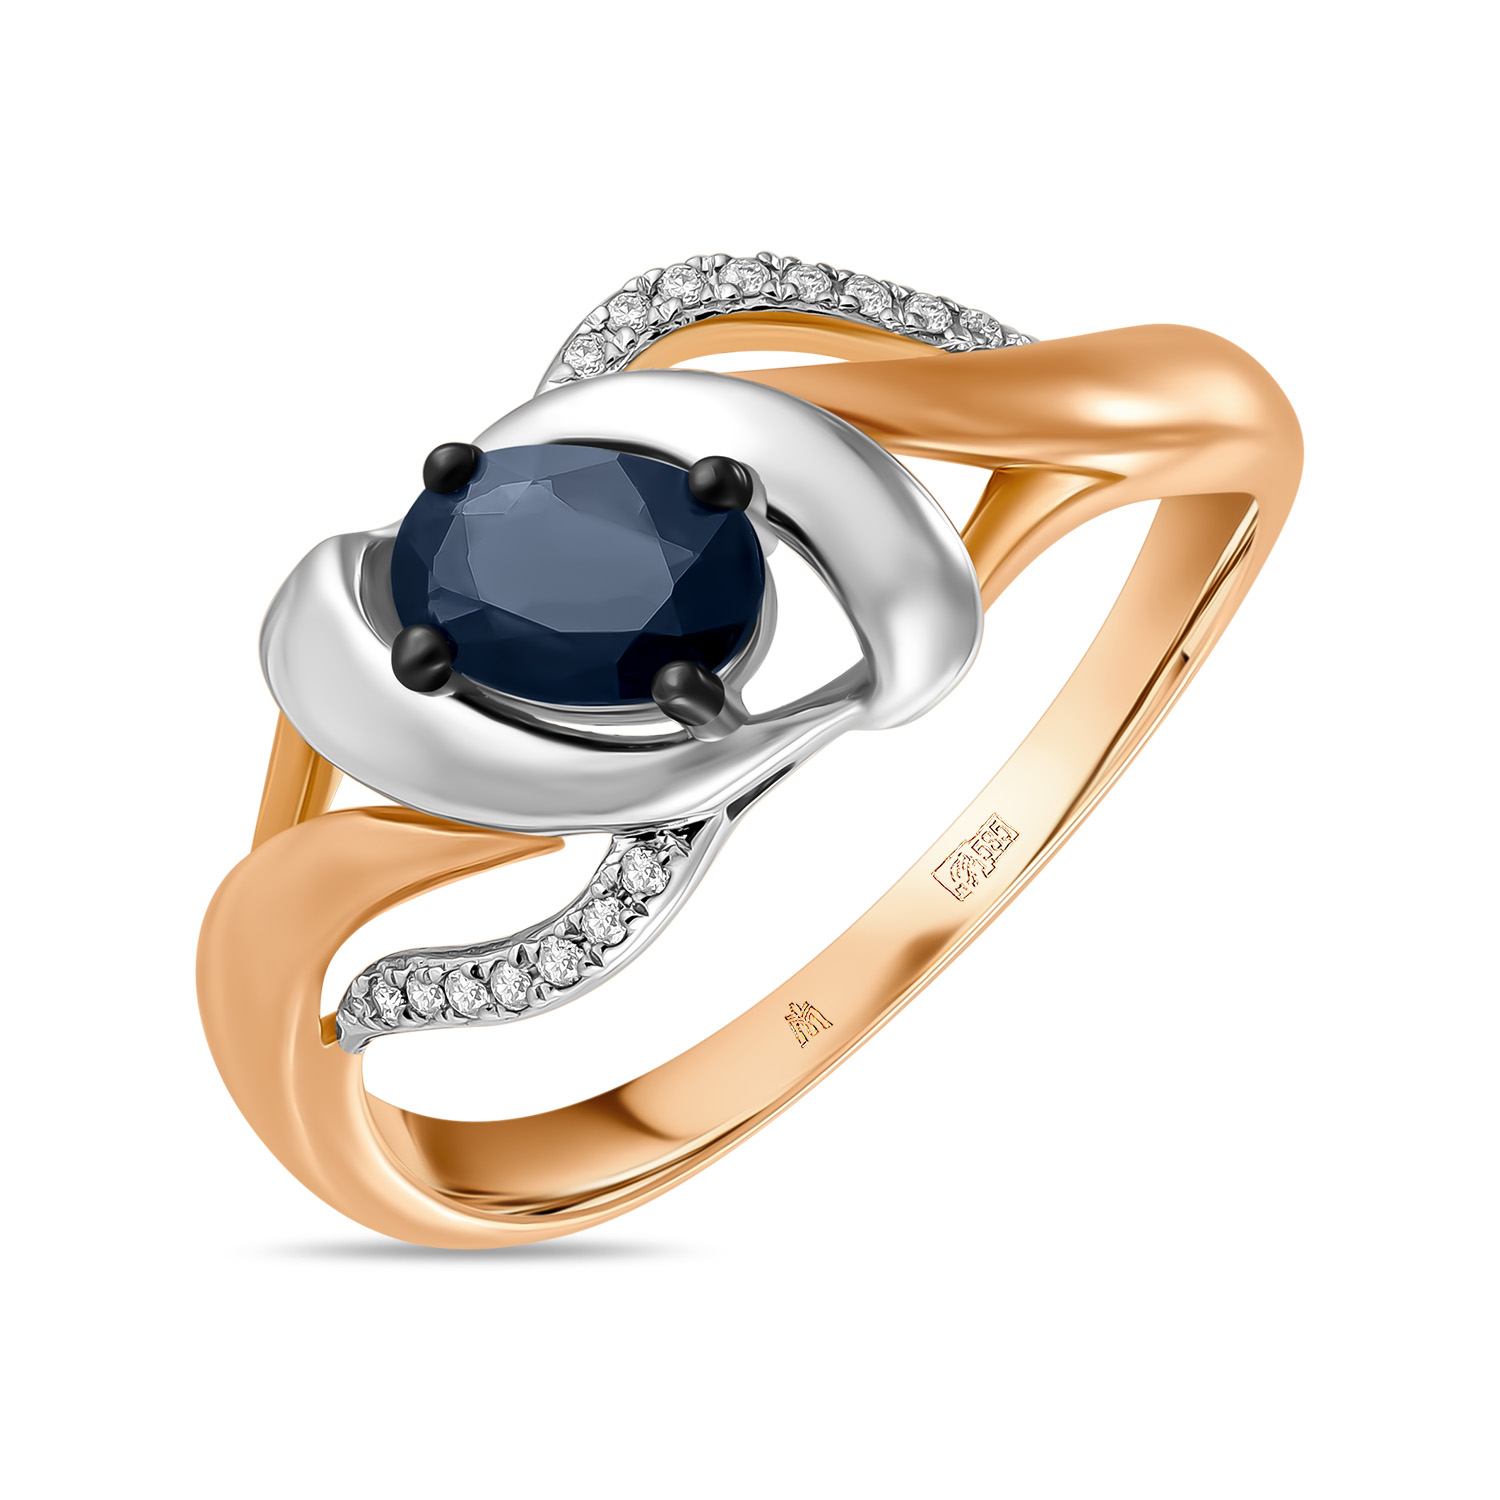 Кольца МЮЗ Золотое кольцо с бриллиантами и сапфиром